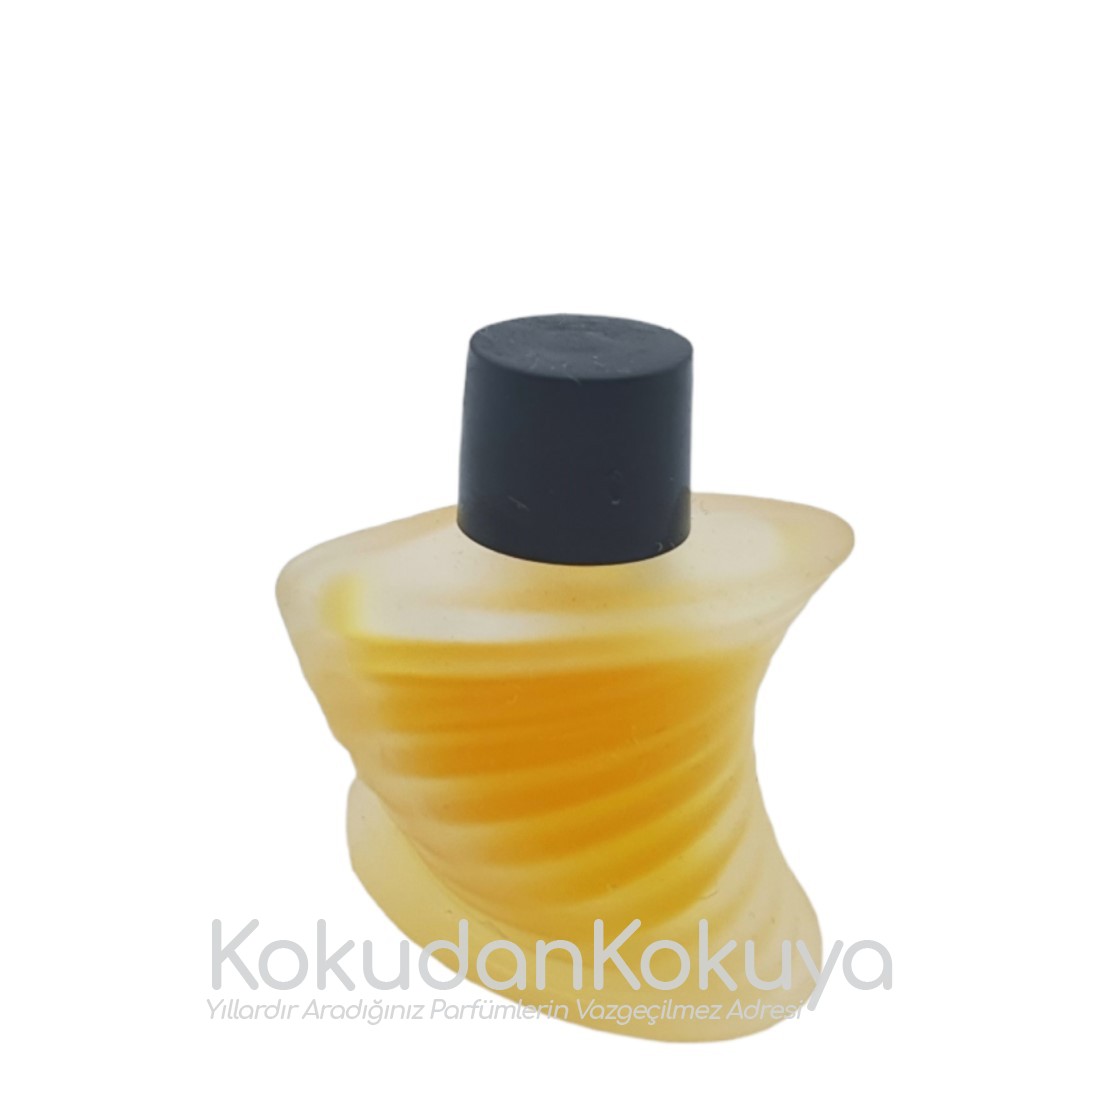 MONTANA Parfum De Peau (Vintage) Parfüm Kadın 2ml Minyatür (Mini Perfume) Dökme 